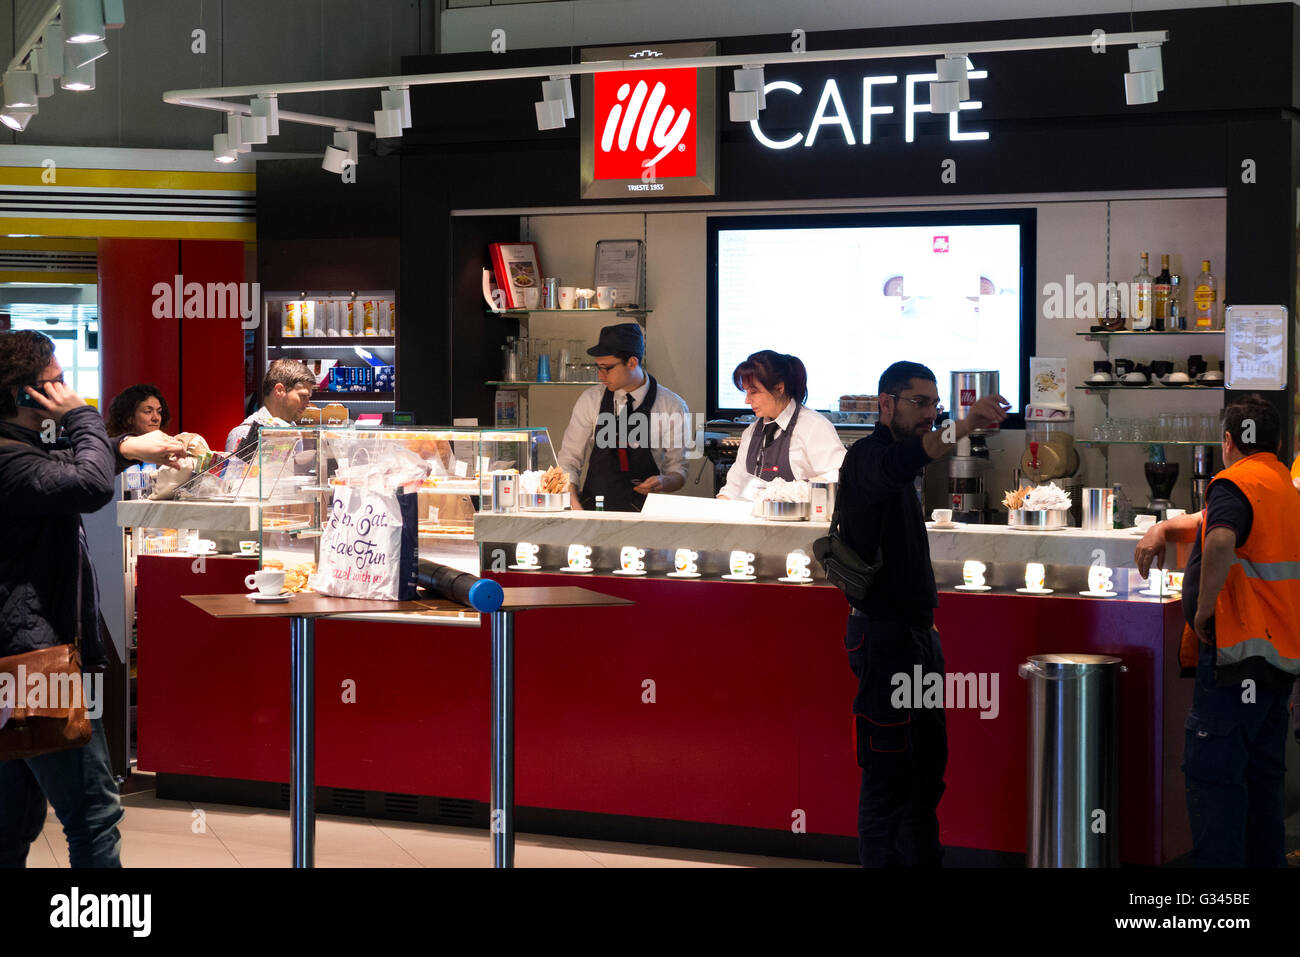 Marke Illy Caffe / Café Kaffee shop dient / ist mit Getränken und Snacks für Passagiere am Flughafen Mailand, Italien. Stockfoto